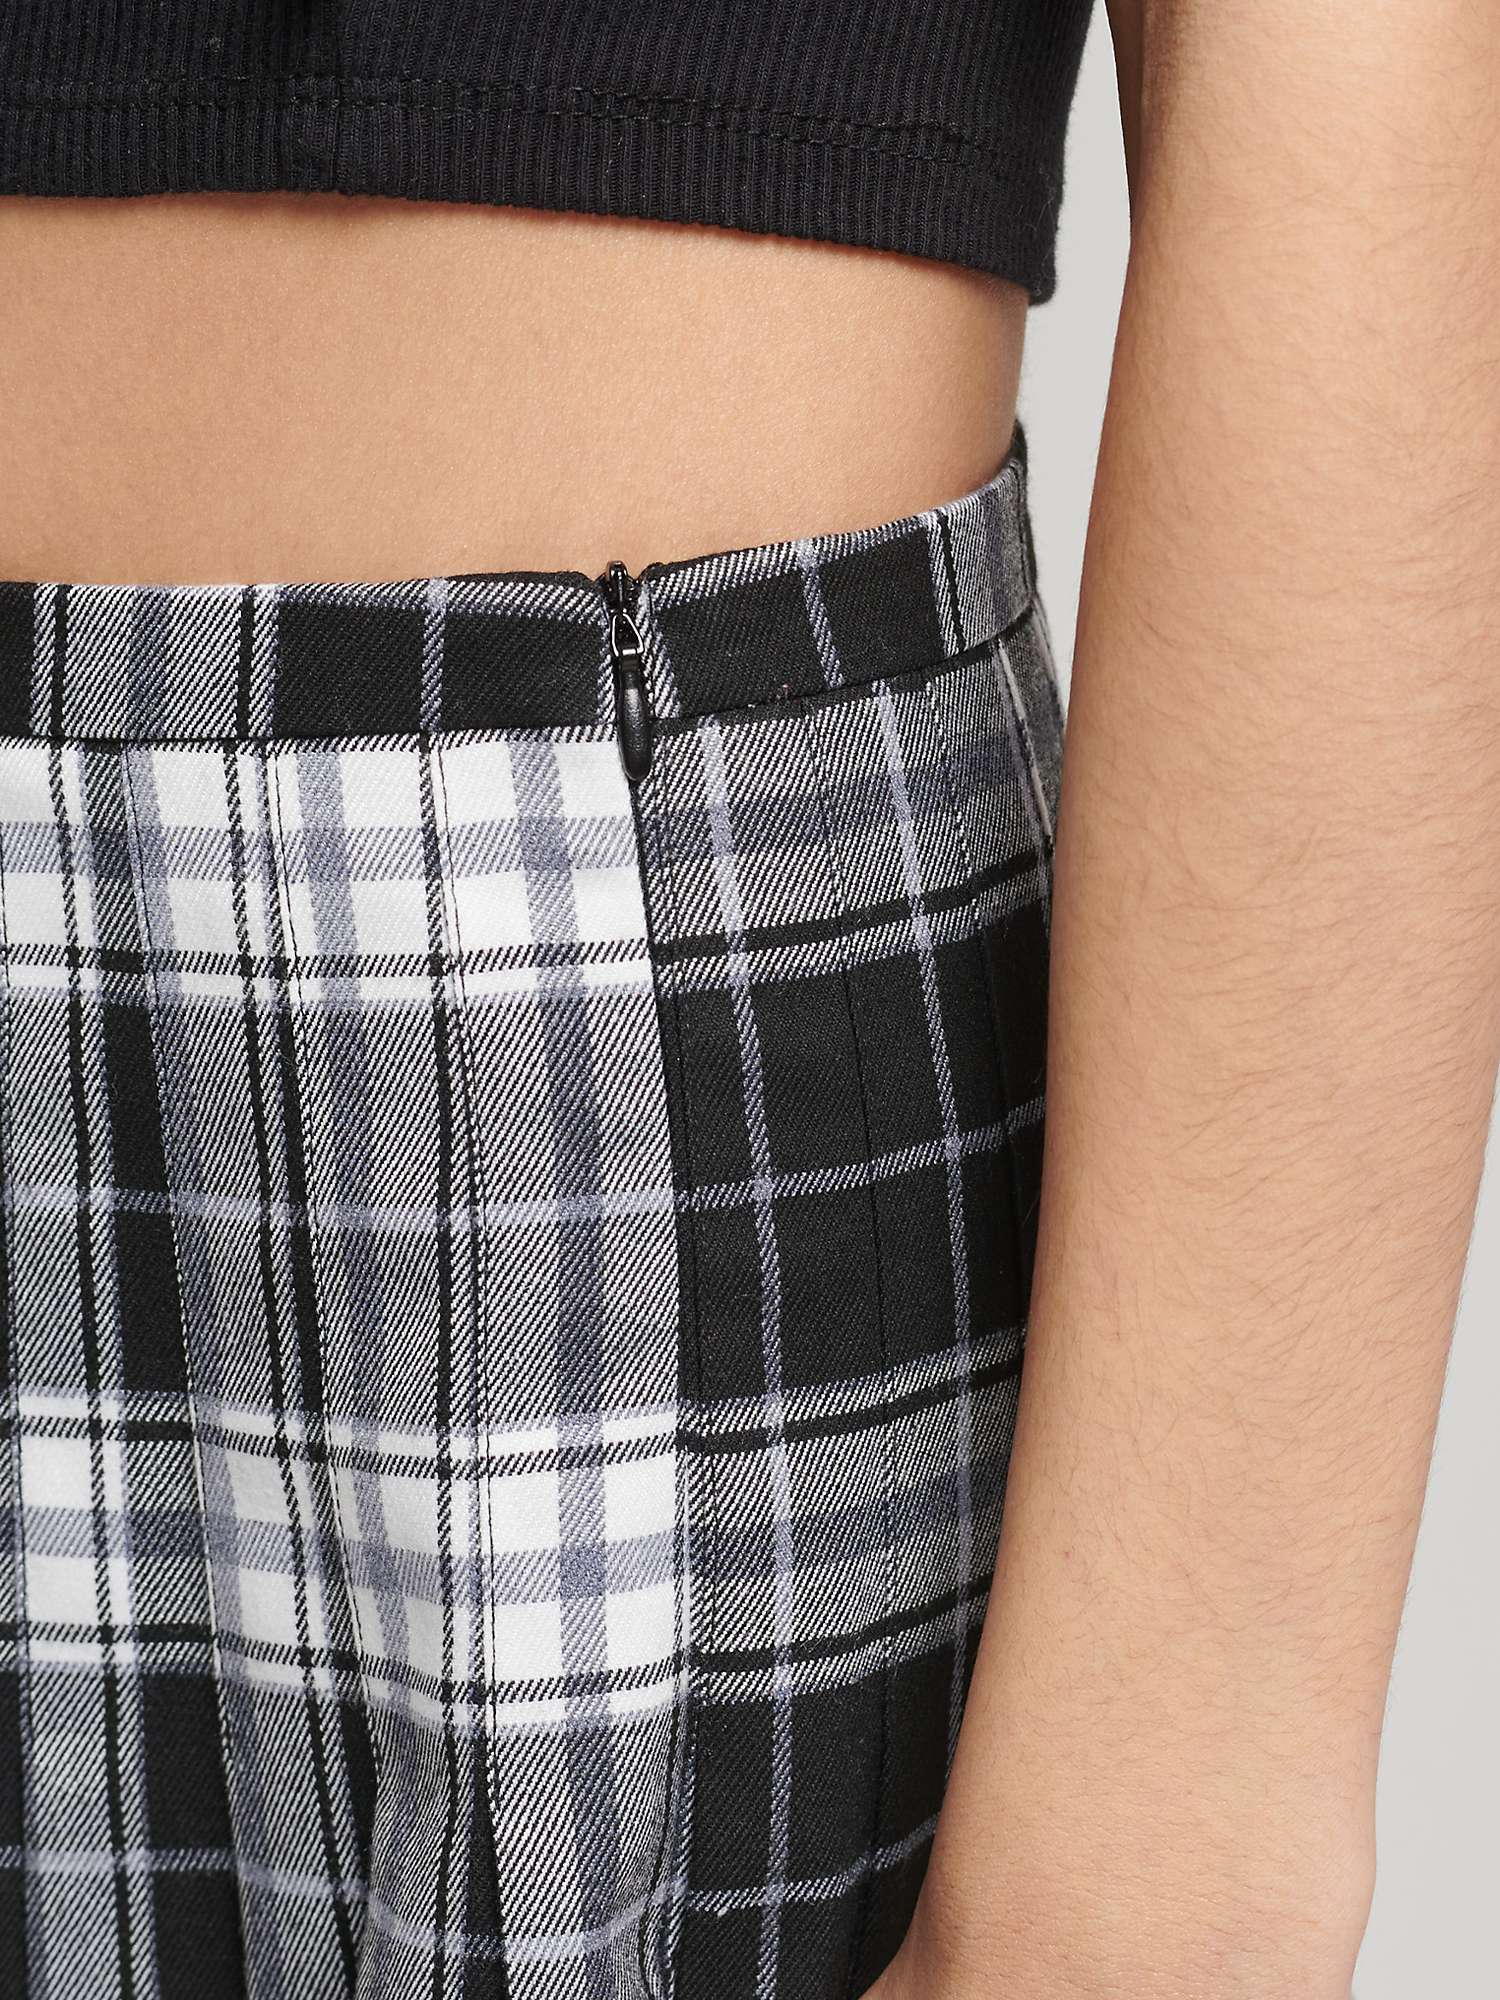 Buy Superdry Check Mini Skirt, Black/White Online at johnlewis.com